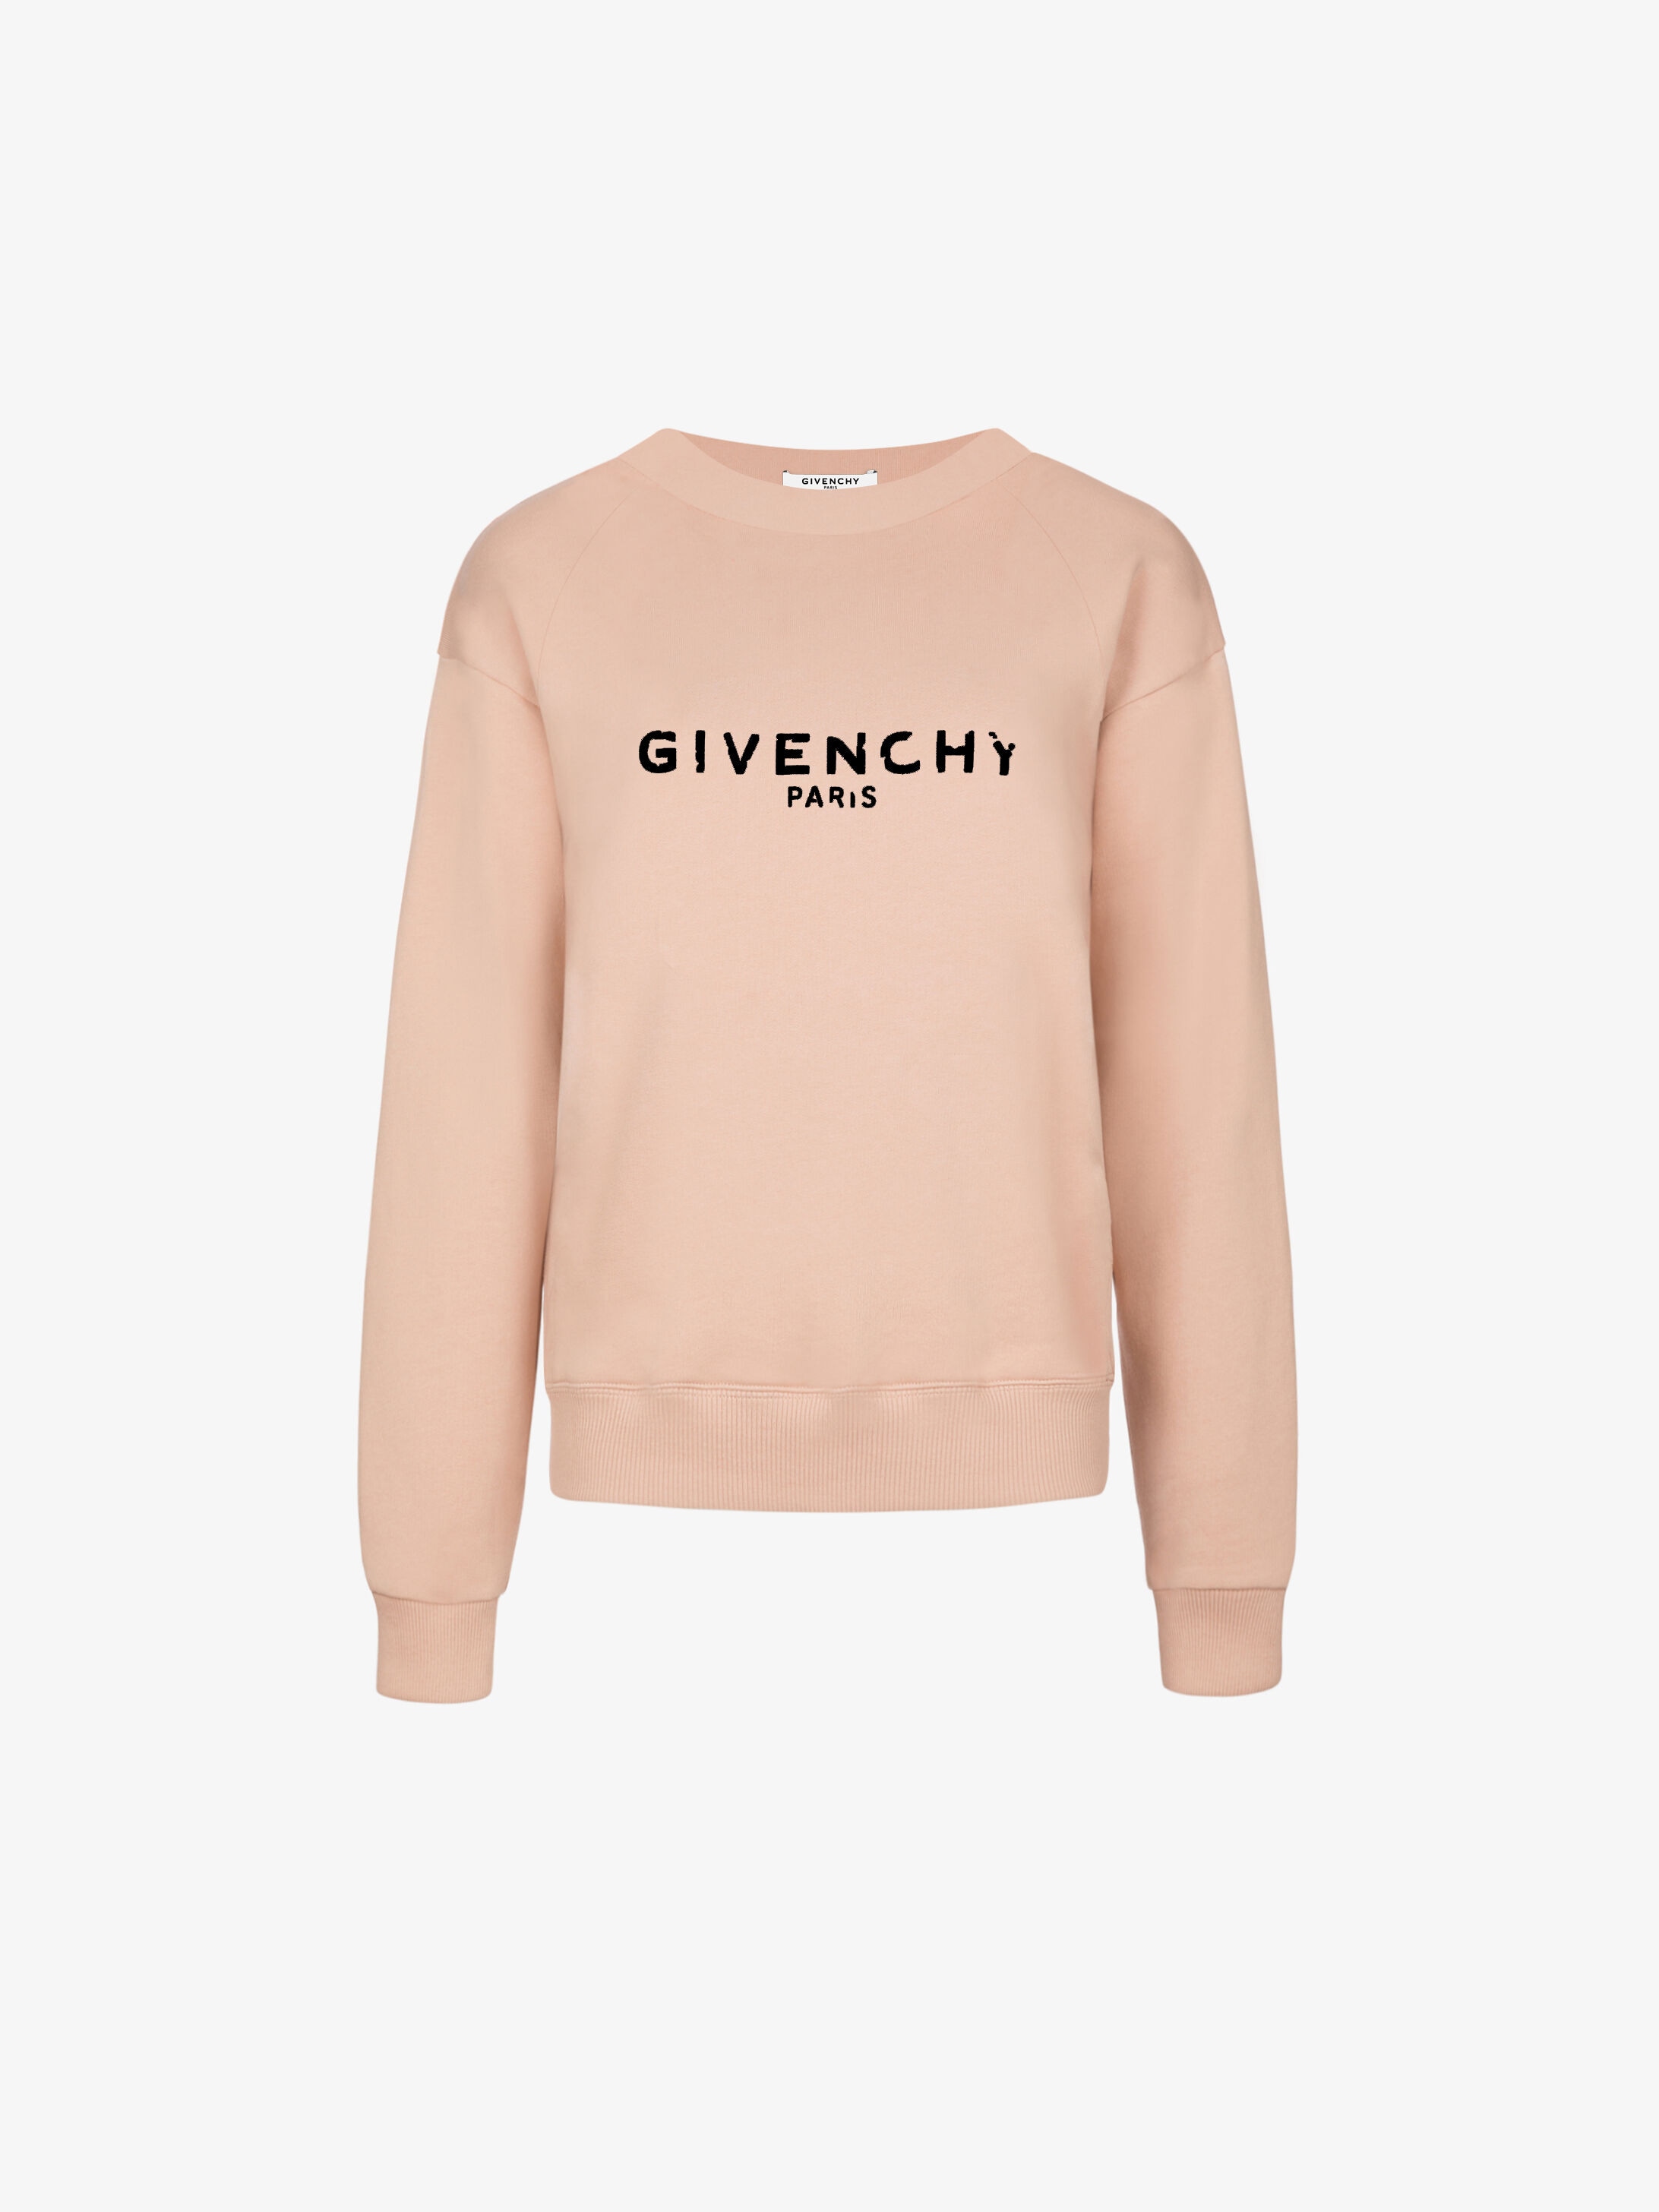 givenchy printed sweatshirt